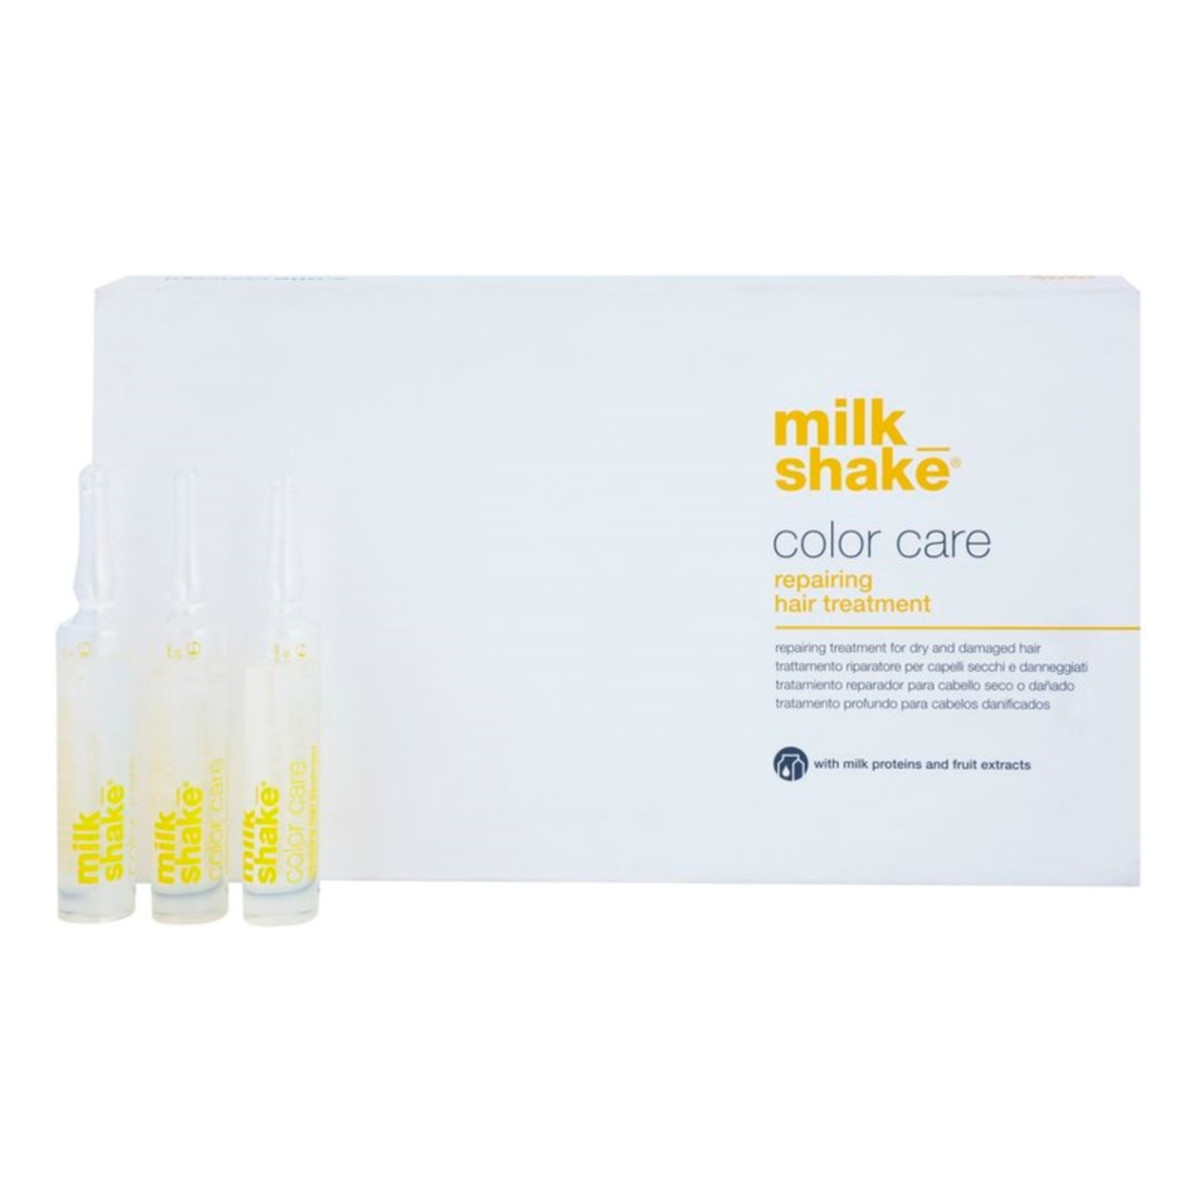 Milk Shake Color Care kuracja pielęgnacyjna do włosów farbowanych 8x12ml 96ml